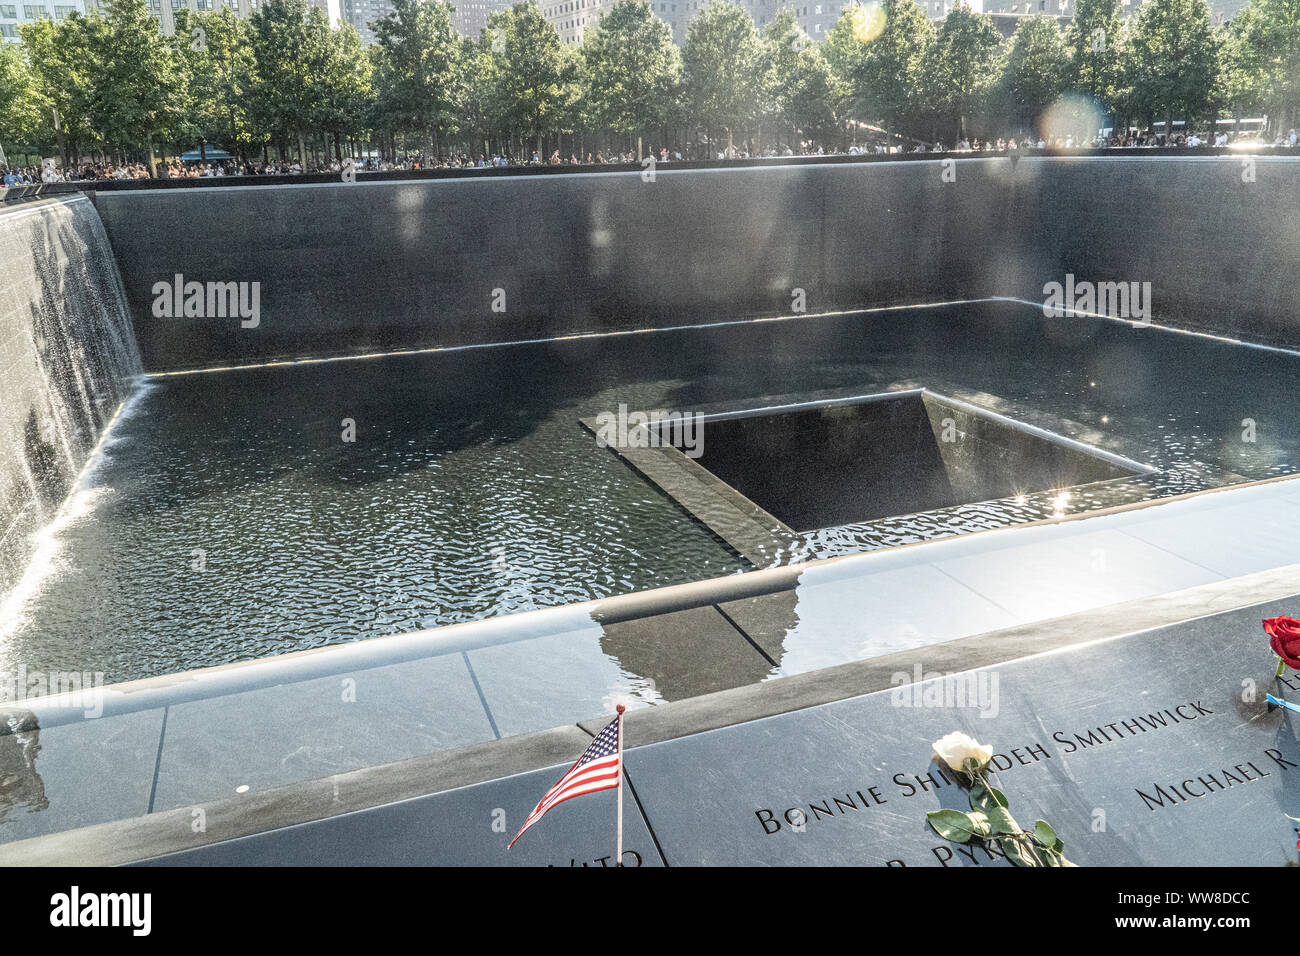 Il World Trade Center Memorial per ricordare le vittime dell'attacco dell'11 settembre. Photo credit: Marty Jean-Louis Foto Stock